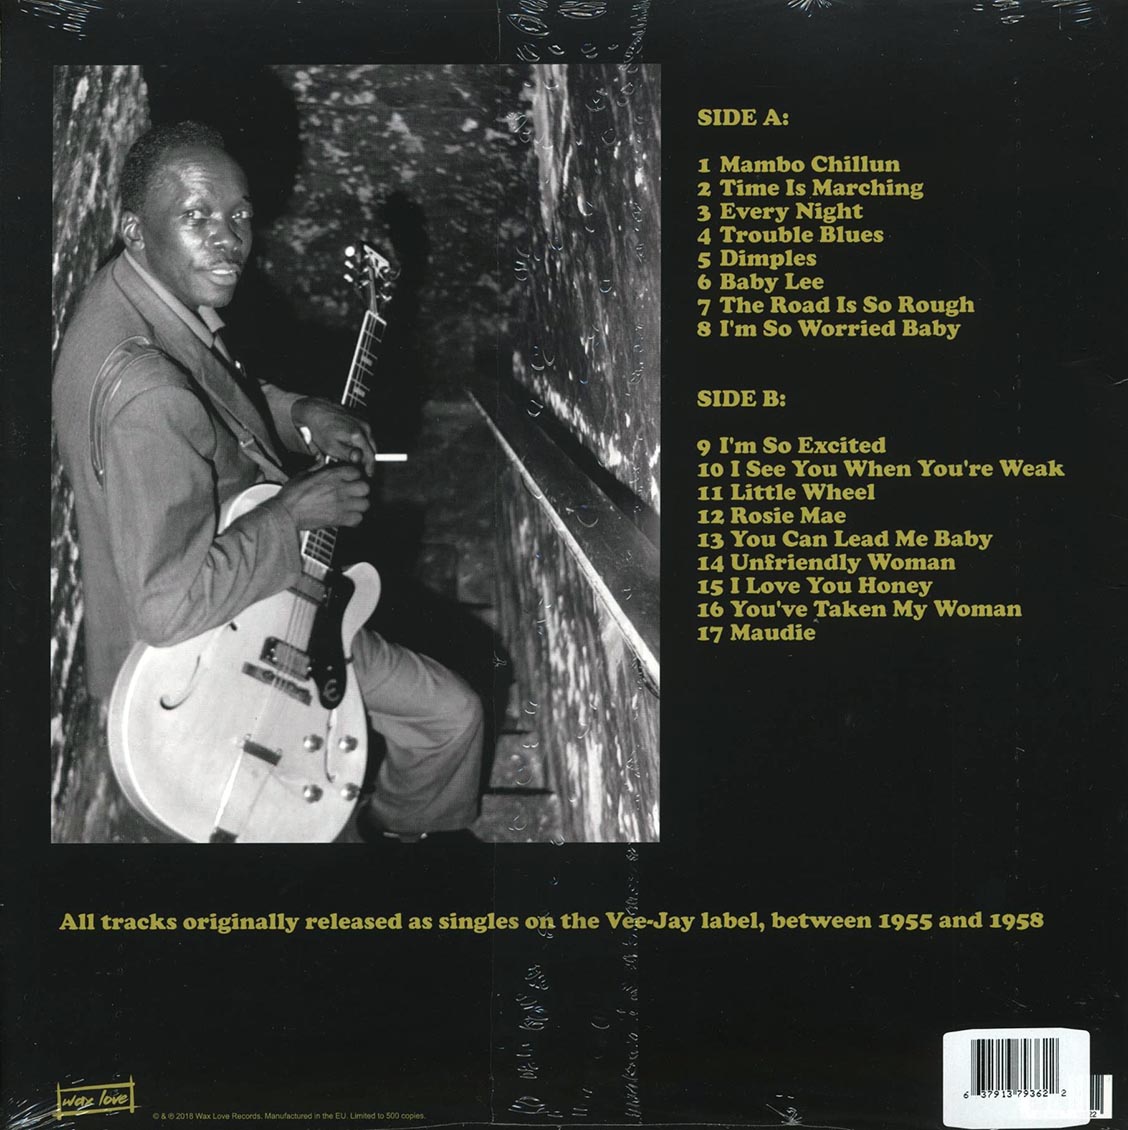 John Lee Hooker (존 리 후커) - Mambo Chillun: Vee-Jay Singles 1955-1958 [LP] 